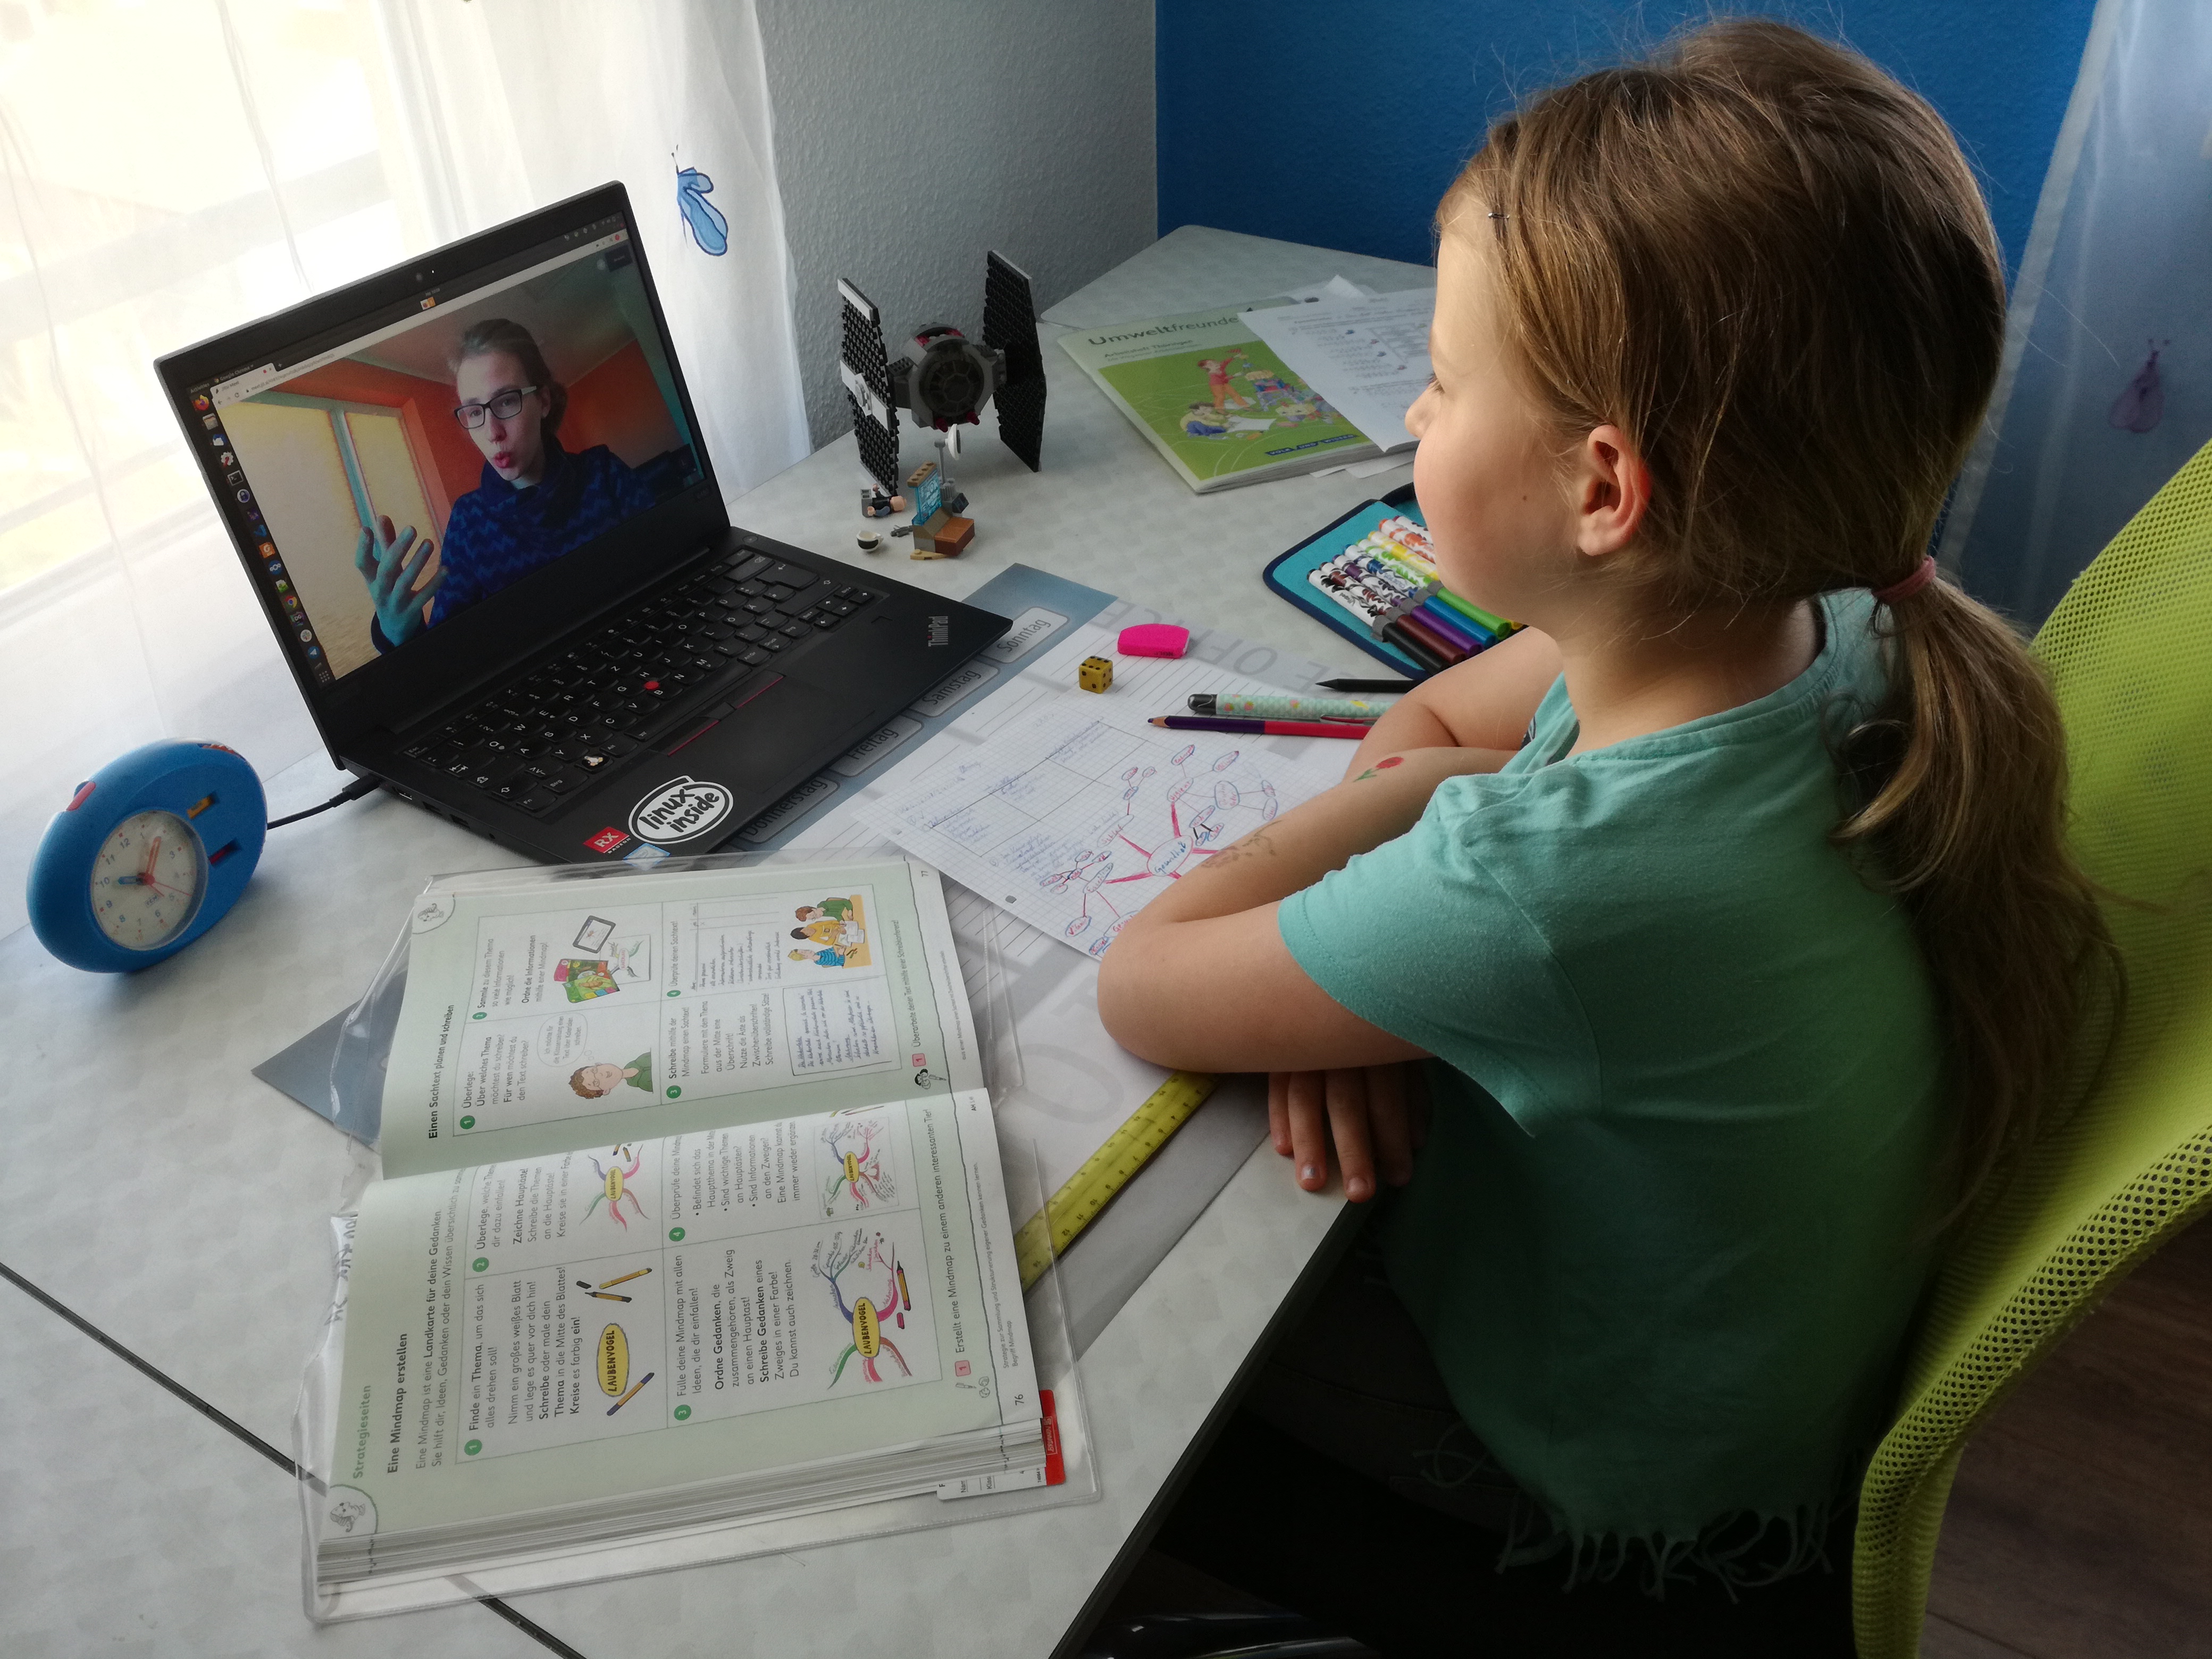 Mädchen mit aufgeschlagenen Schulheften bekommt am Laptop per Videokonferenz etwas von einer Studentin erklärt